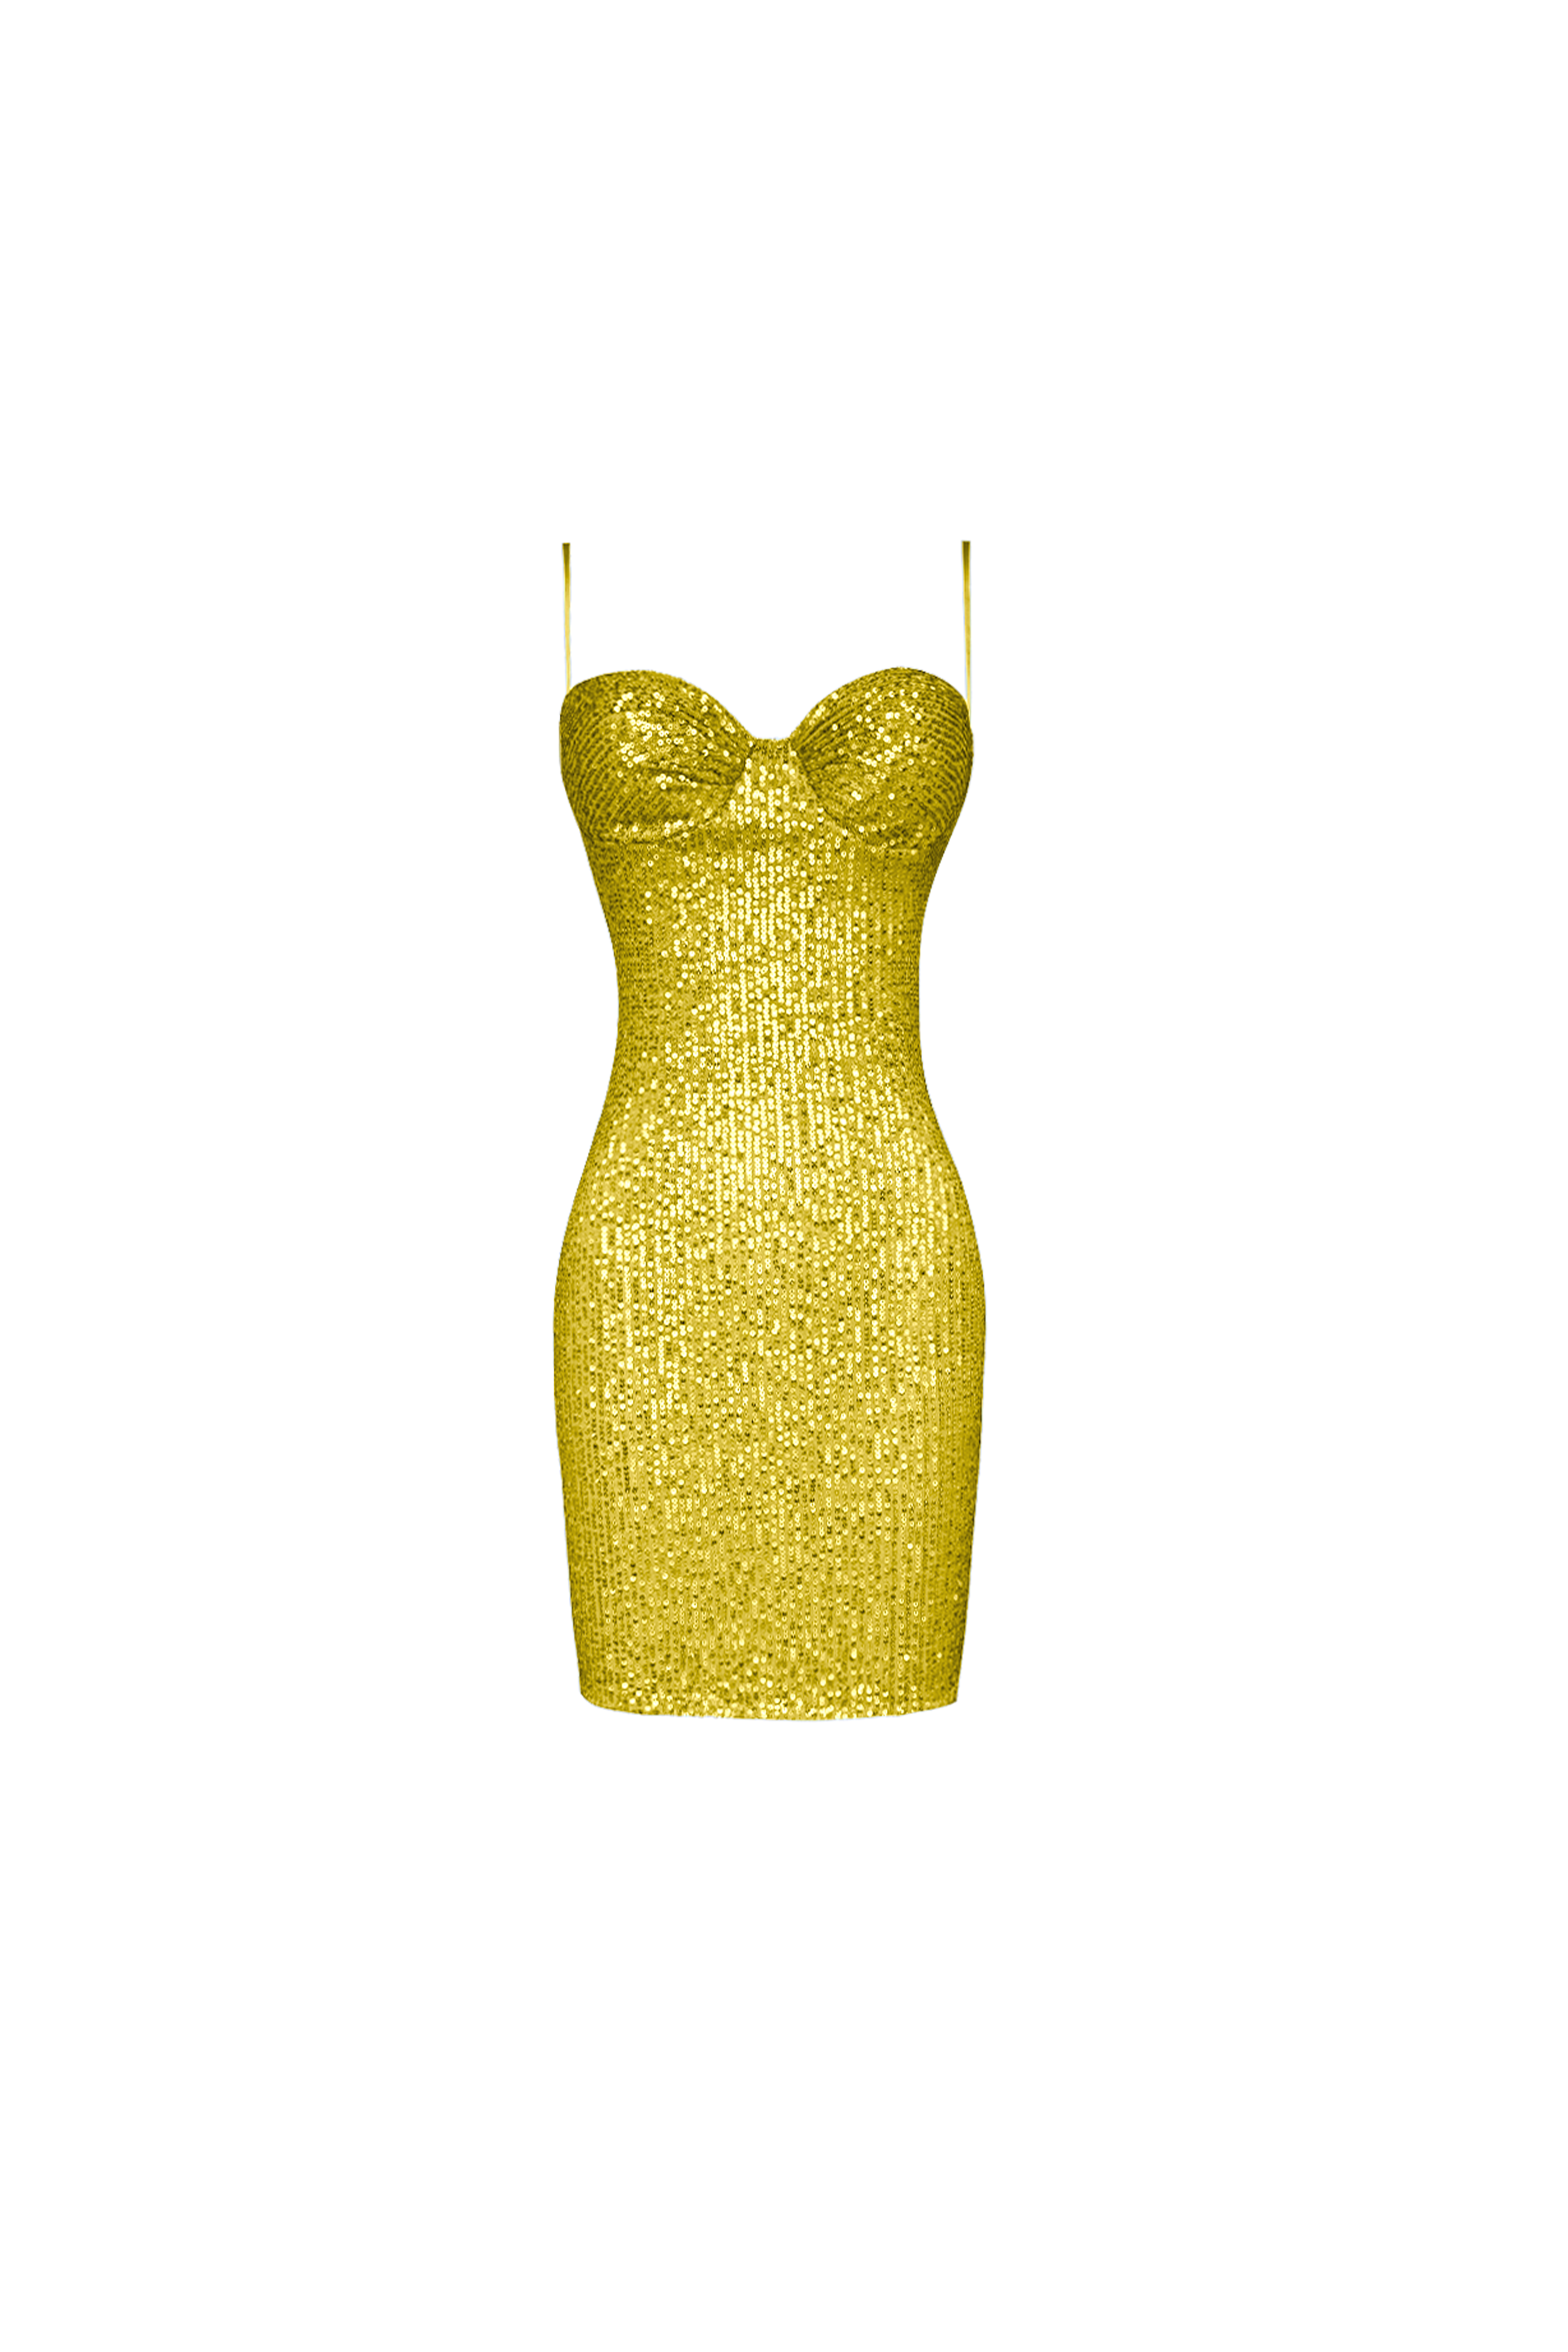 Sonnen Yellow Dress